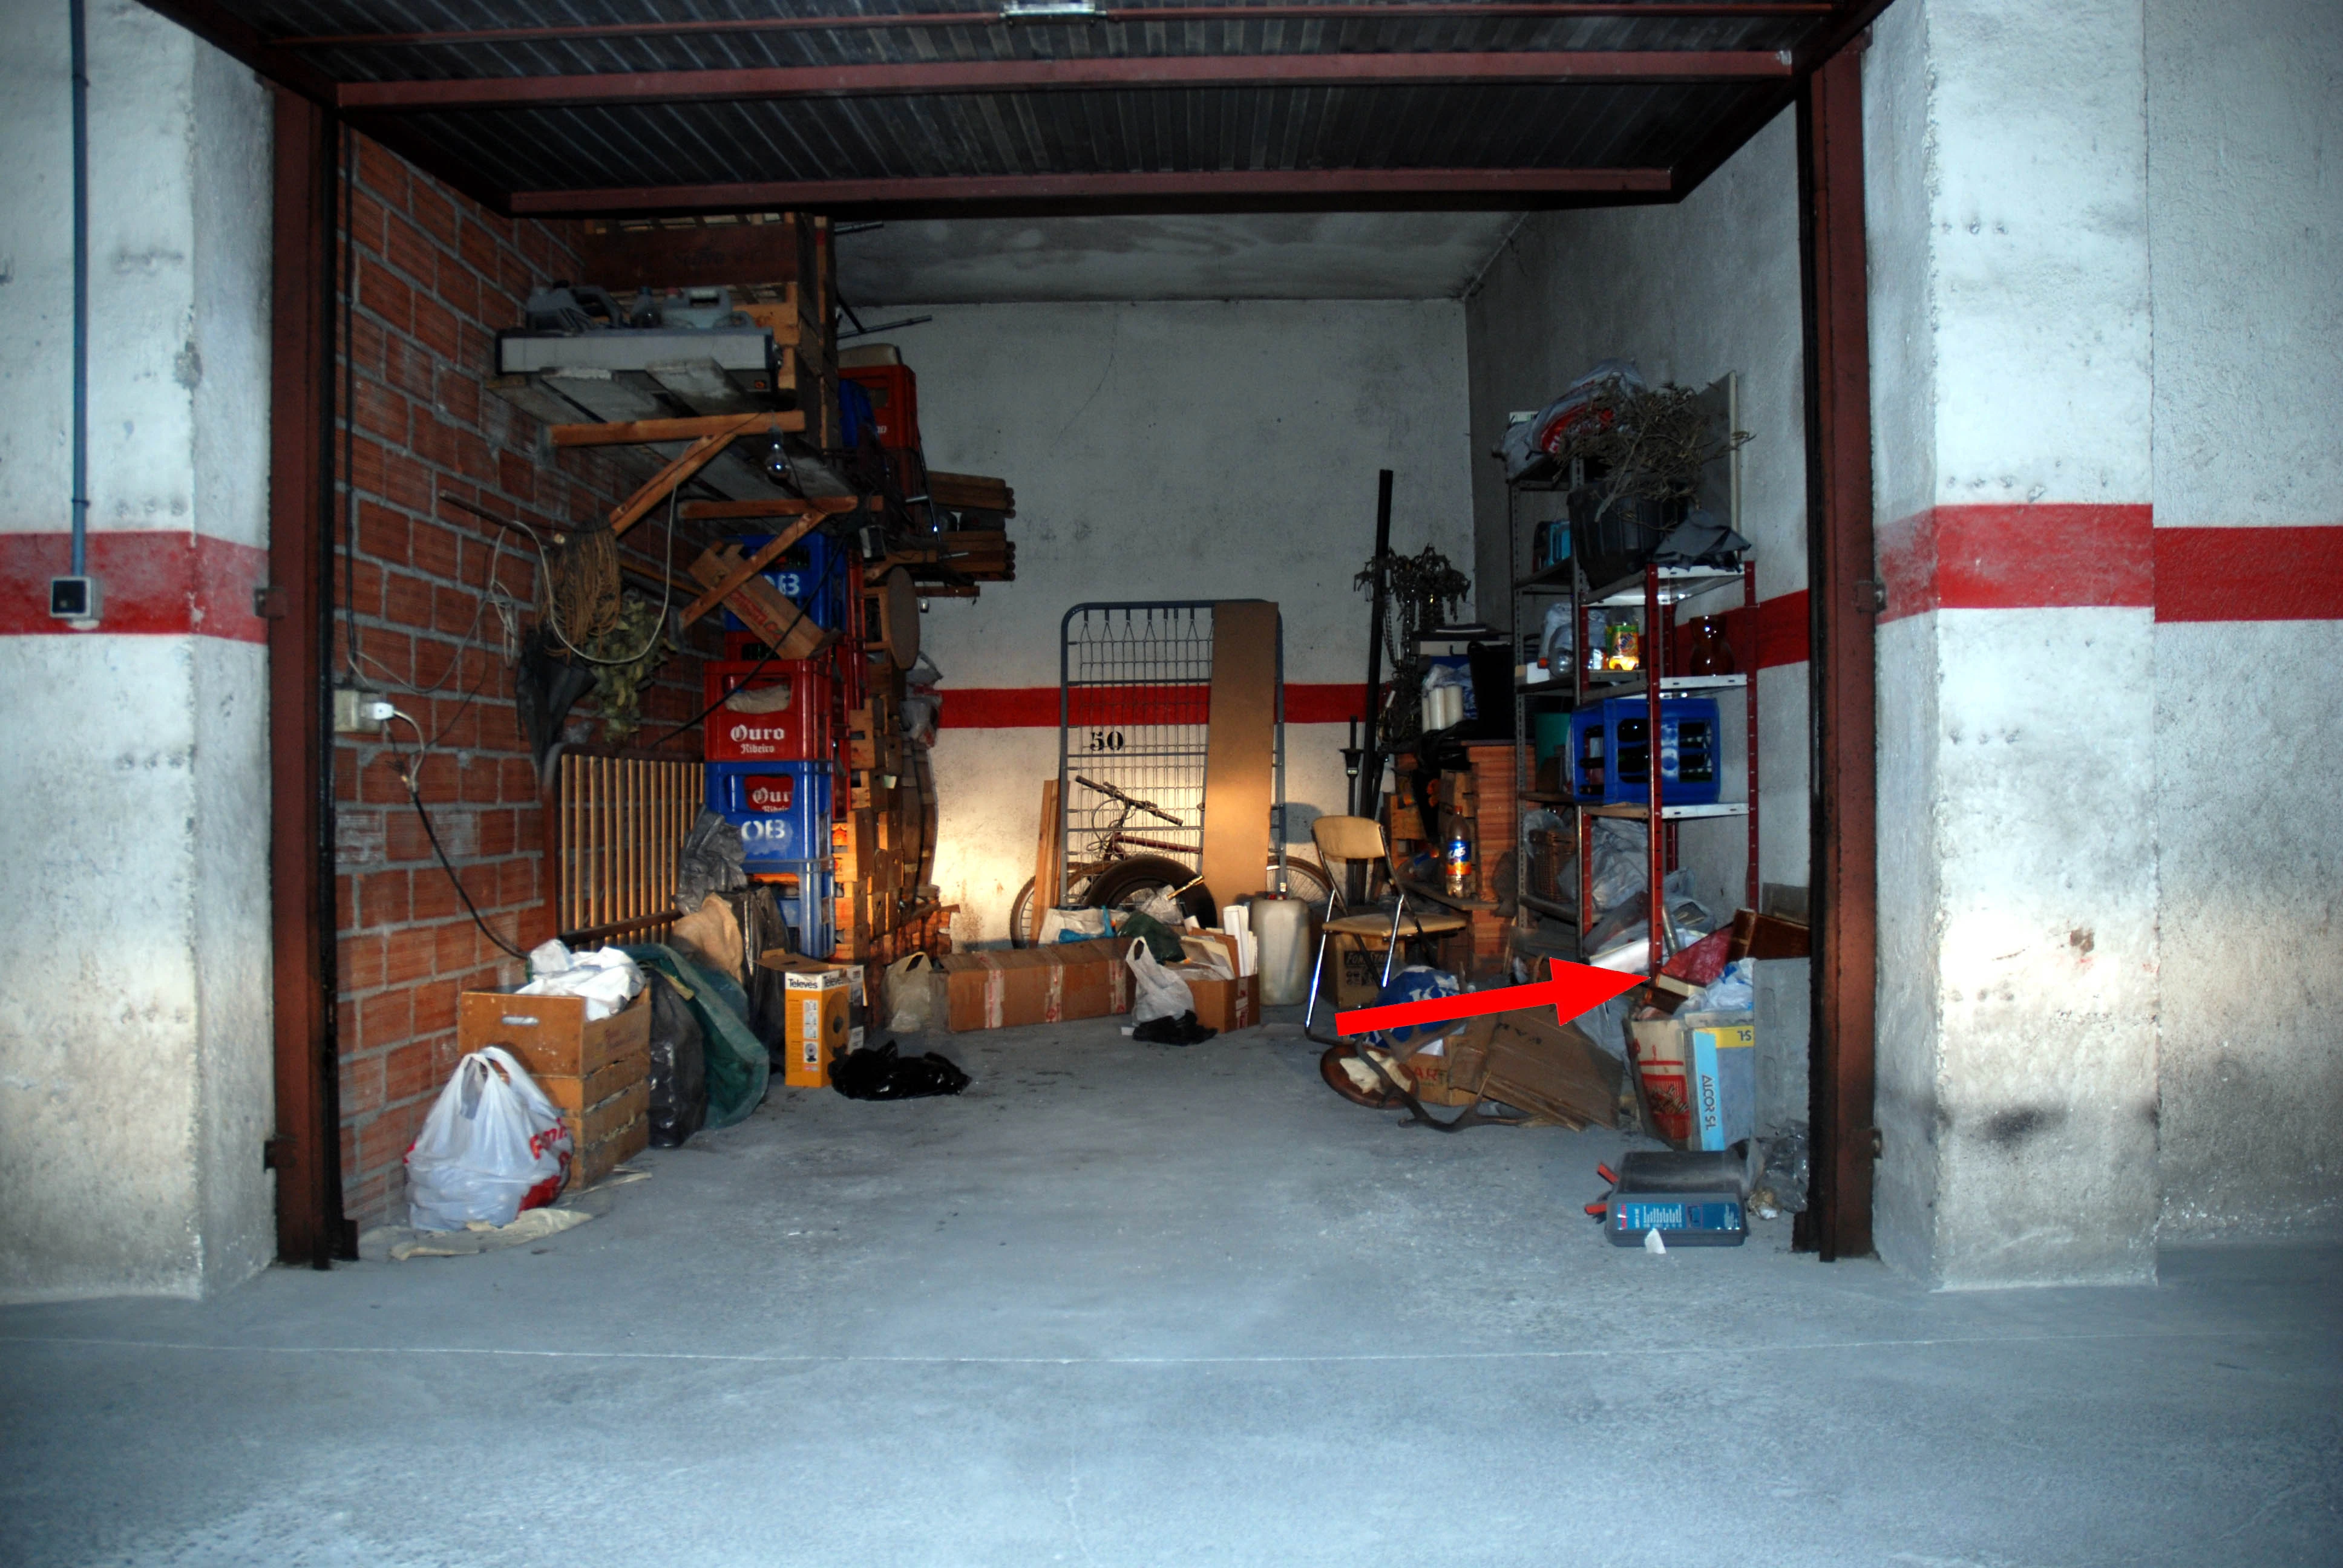 Aparece el Códice Calixtino en un garaje cerca de Santiago, entre bolsas y periódicos